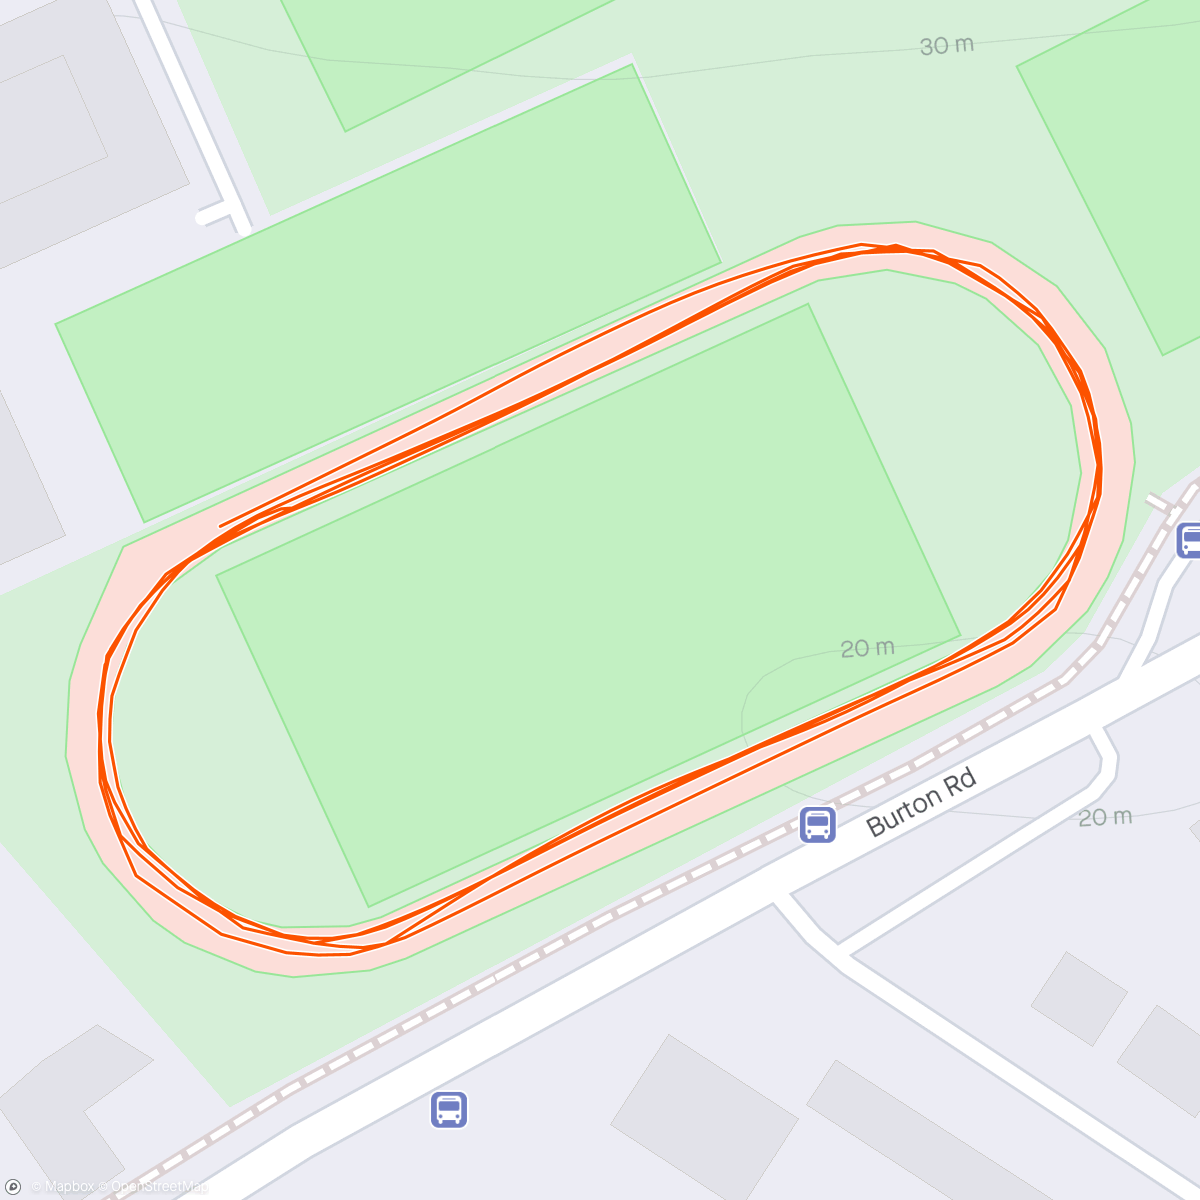 アクティビティ「Track session number 4 - baseline mile test」の地図